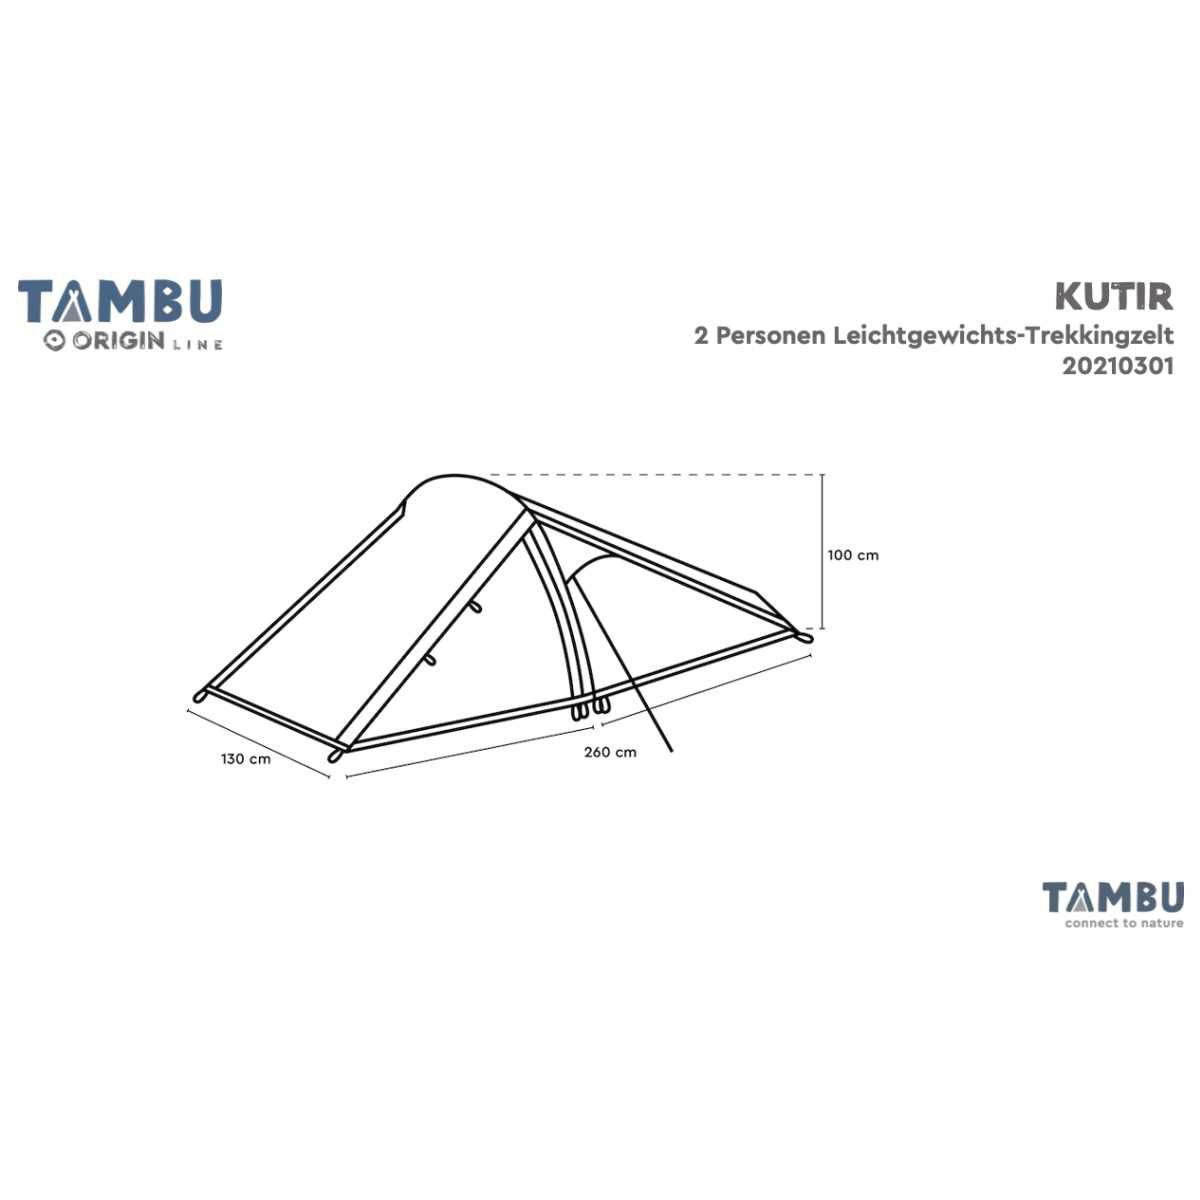 TAMBU KUTIR Leichtgewichts Trekkingzelt Graublau 2 Personen - 20210301